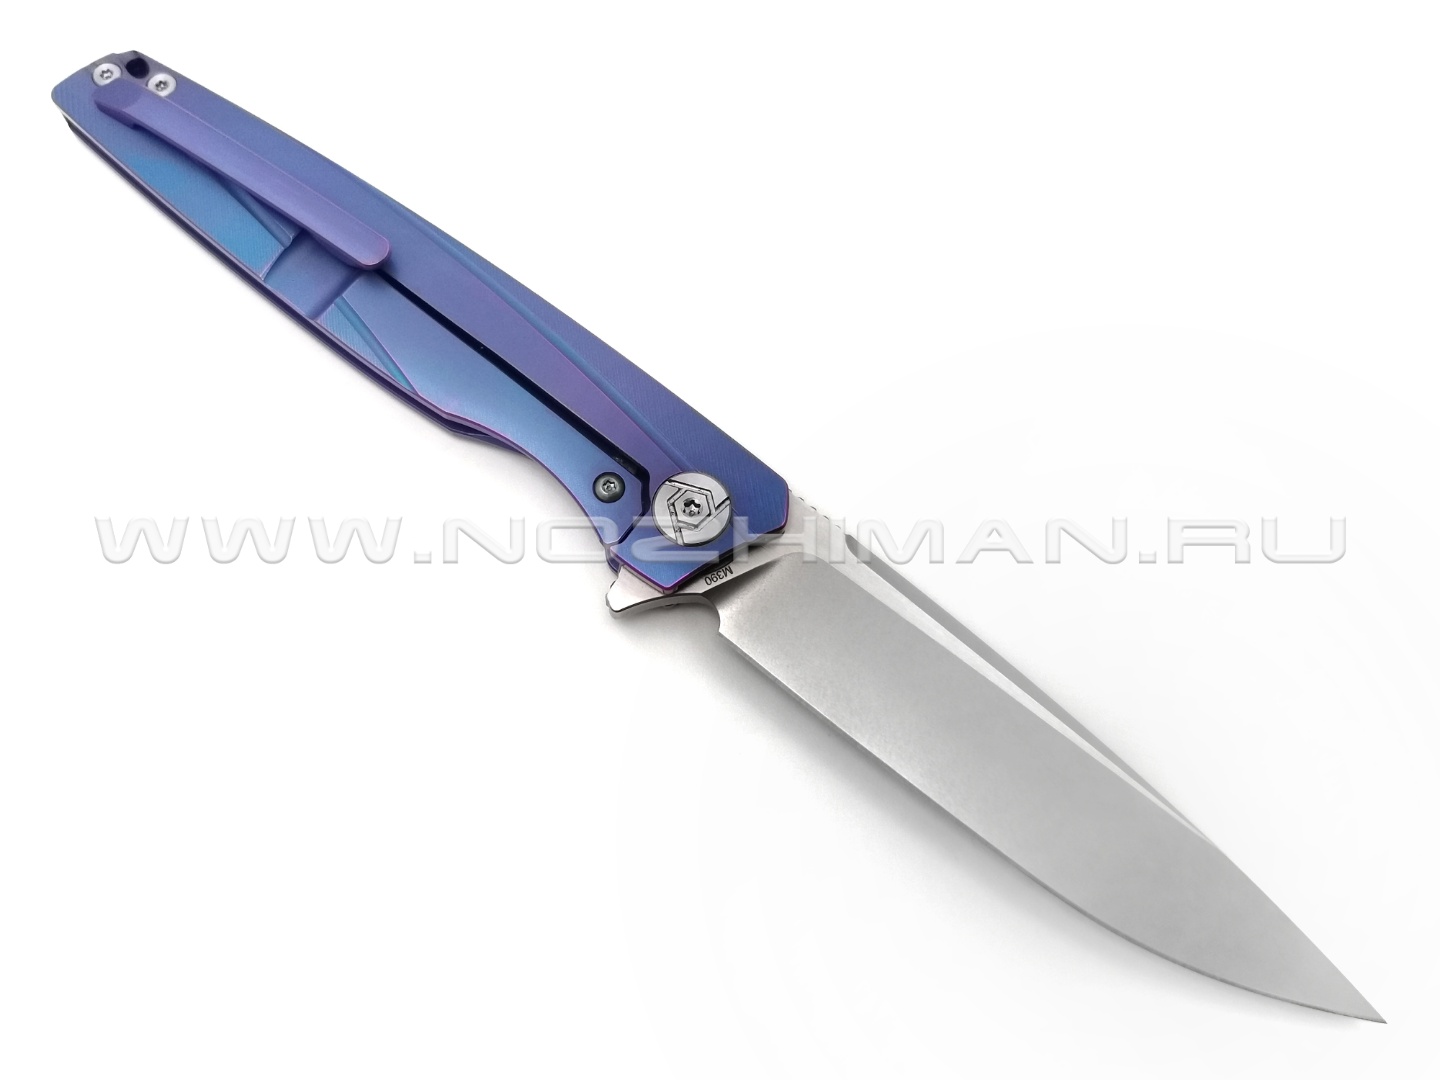 Rike Knife нож RK803CH-B сталь M390, рукоять 6AL4V Titanium blue, carbon fiber